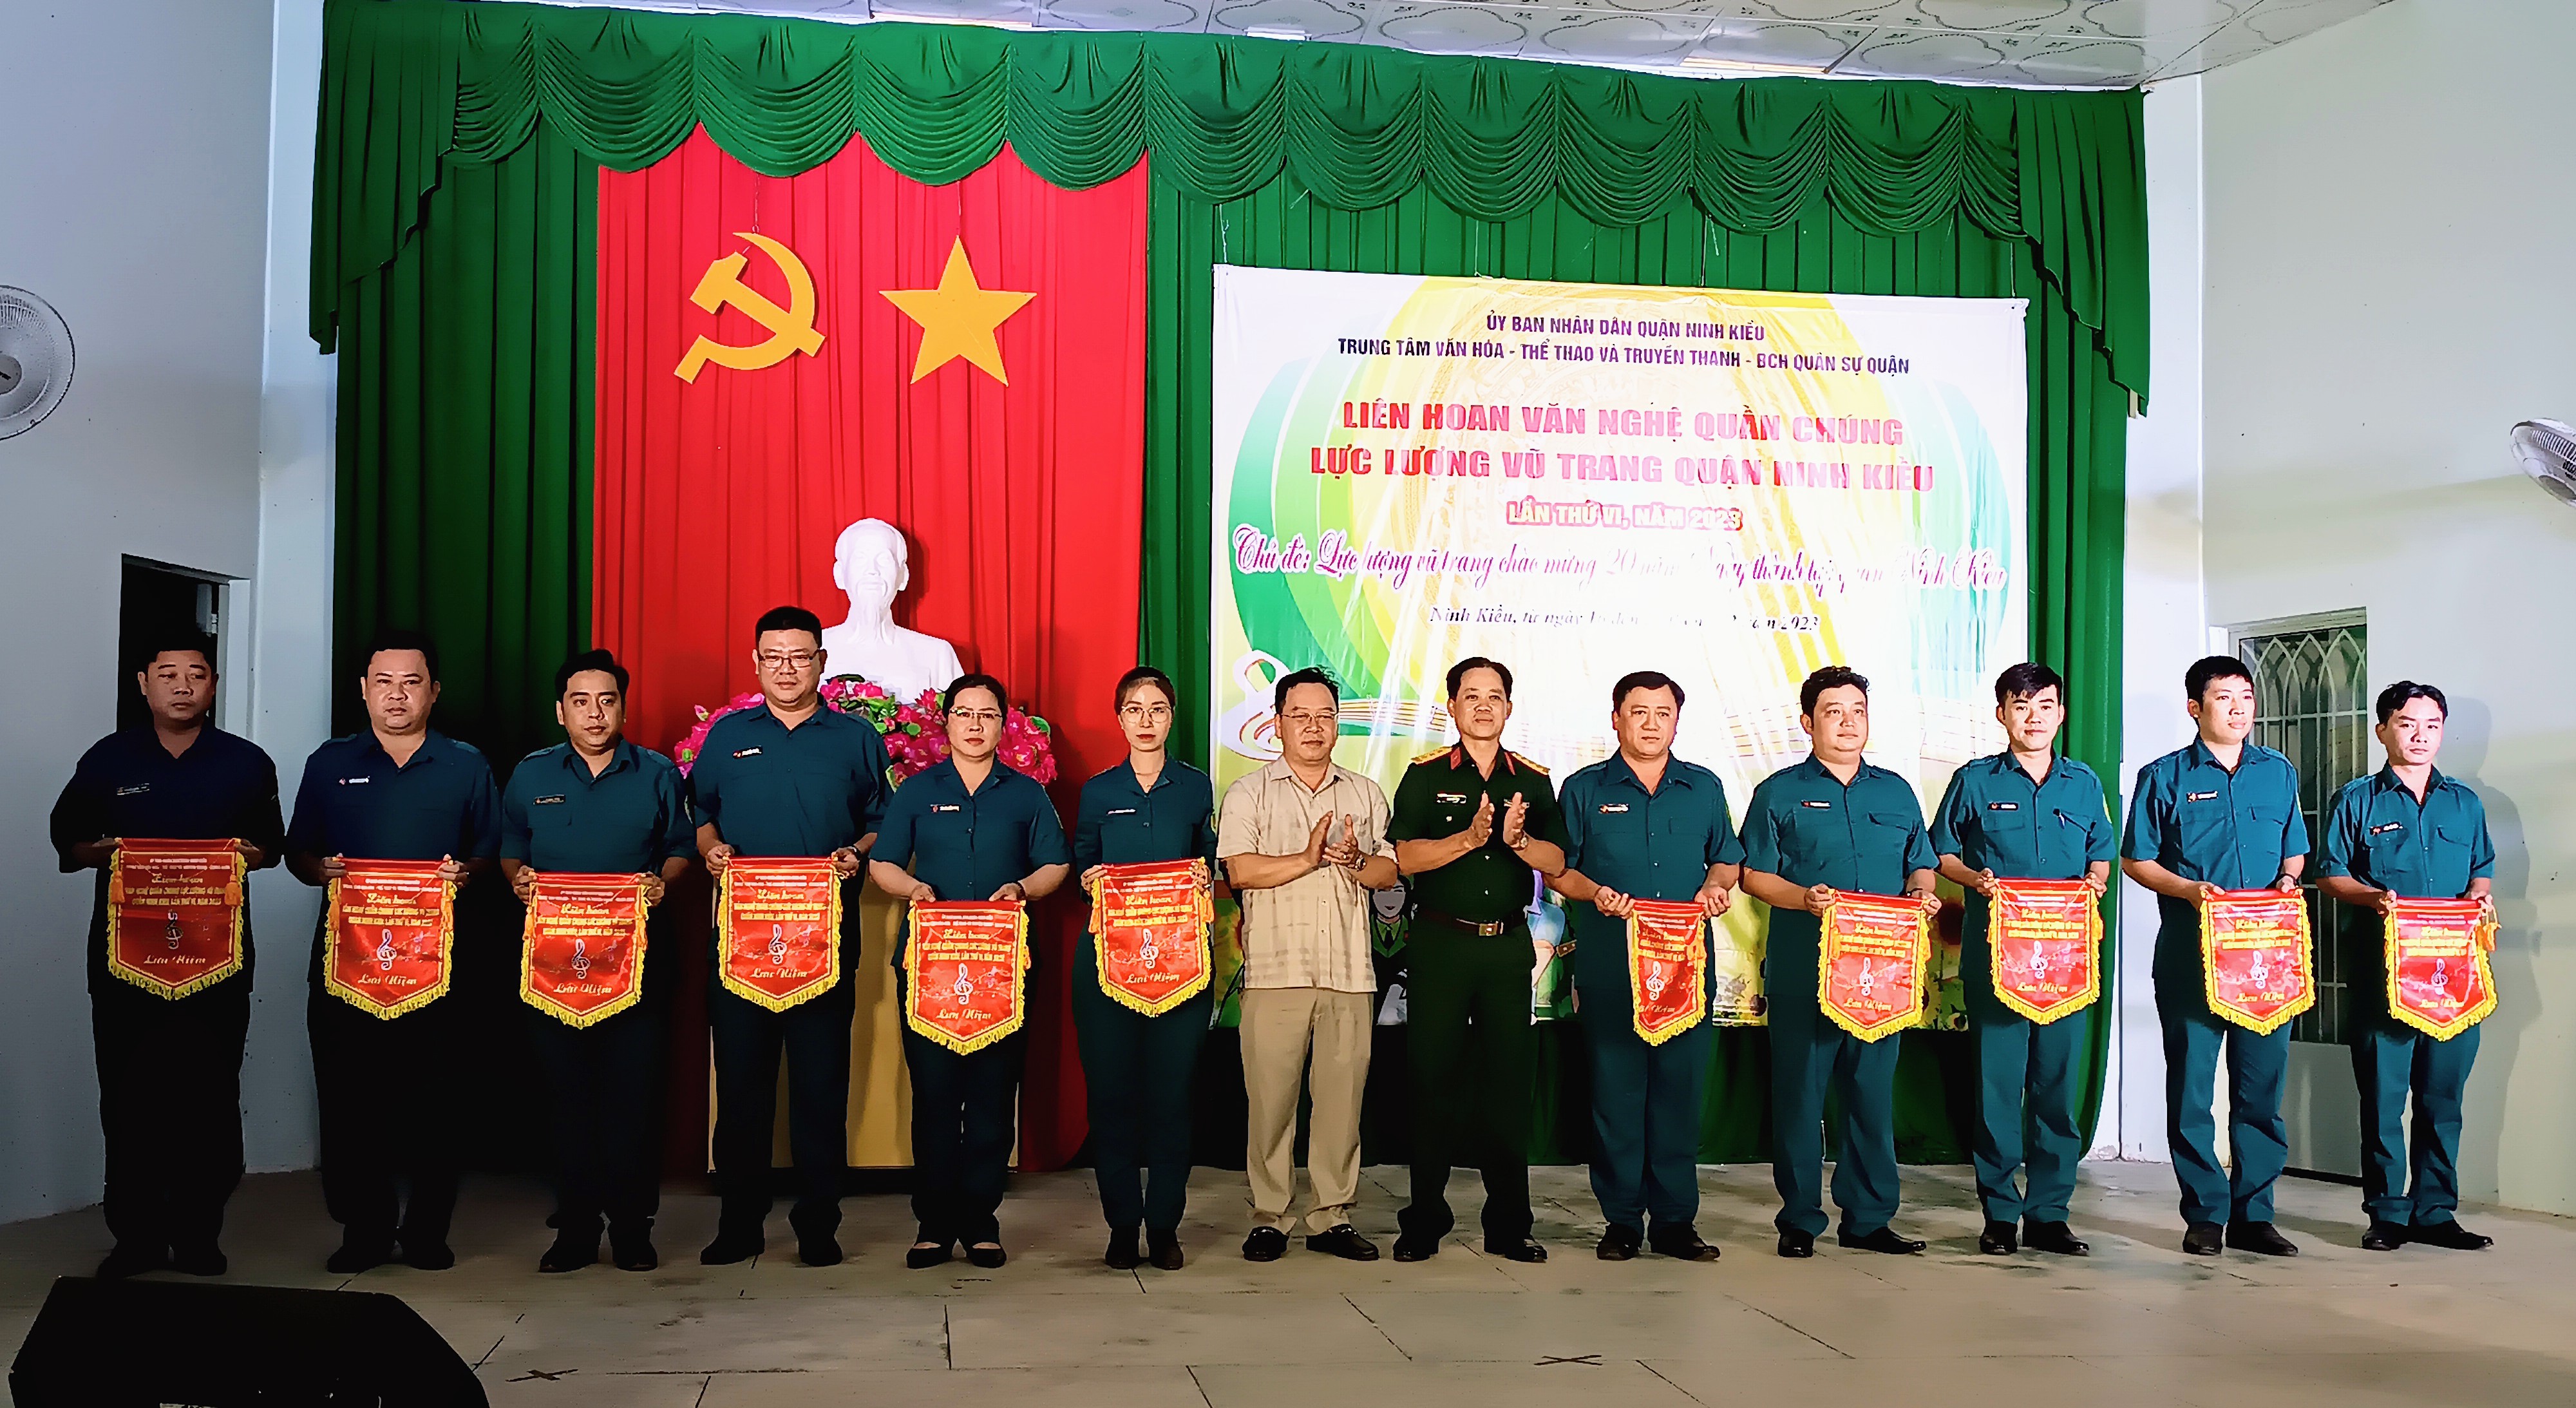 Ông Nguyễn Ngọc Ánh, Phó Chủ tịch thường trực UBND quận trao cờ lưu niệm cho các đơn vị tham gia liên hoan